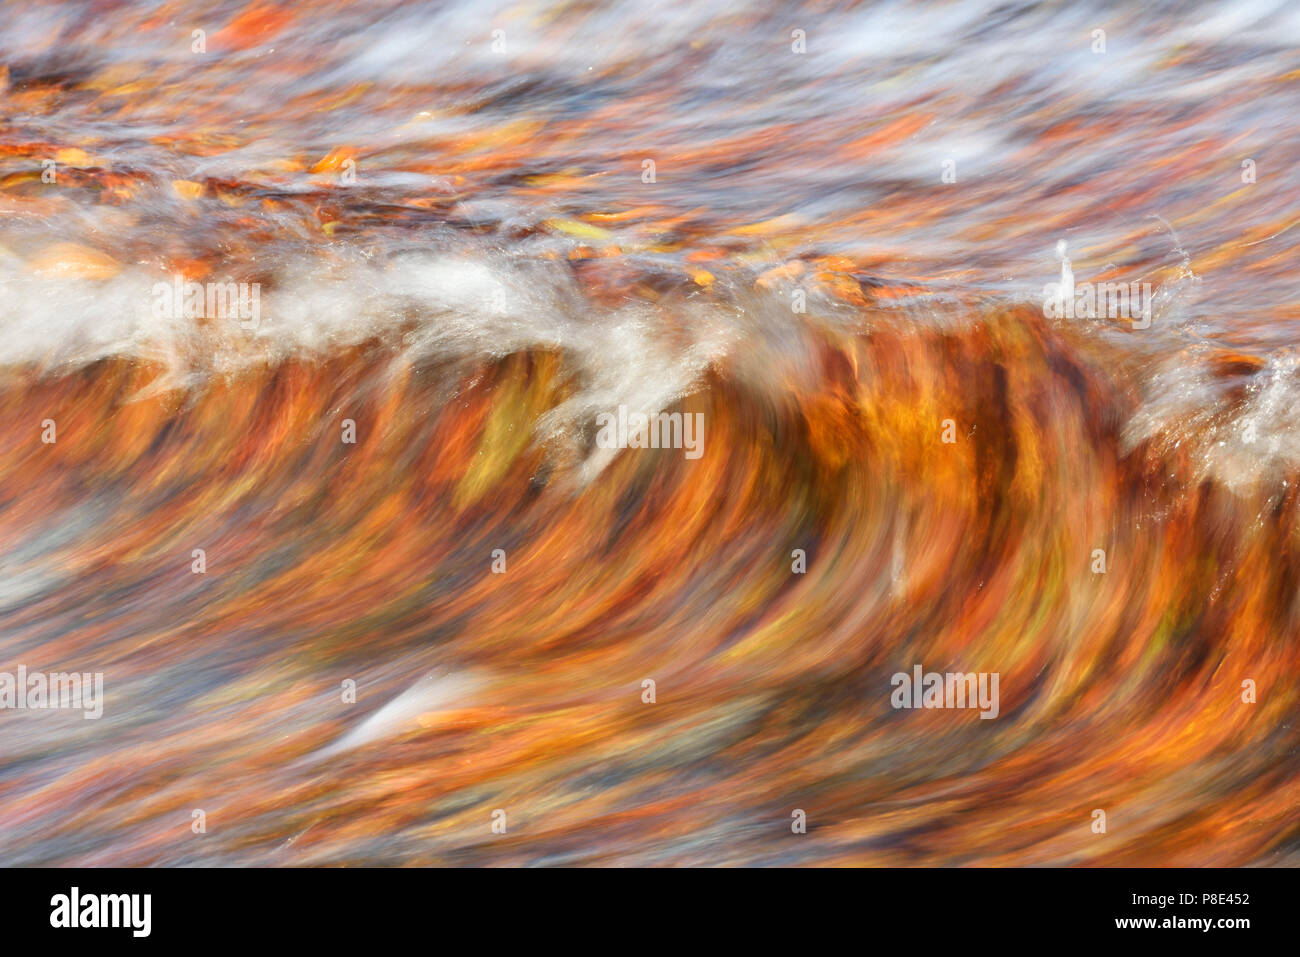 Feuilles aux couleurs automnales nager dans les vagues de la mer Baltique après une tempête, l'île de Rügen, Mecklembourg-Poméranie-Occidentale Banque D'Images